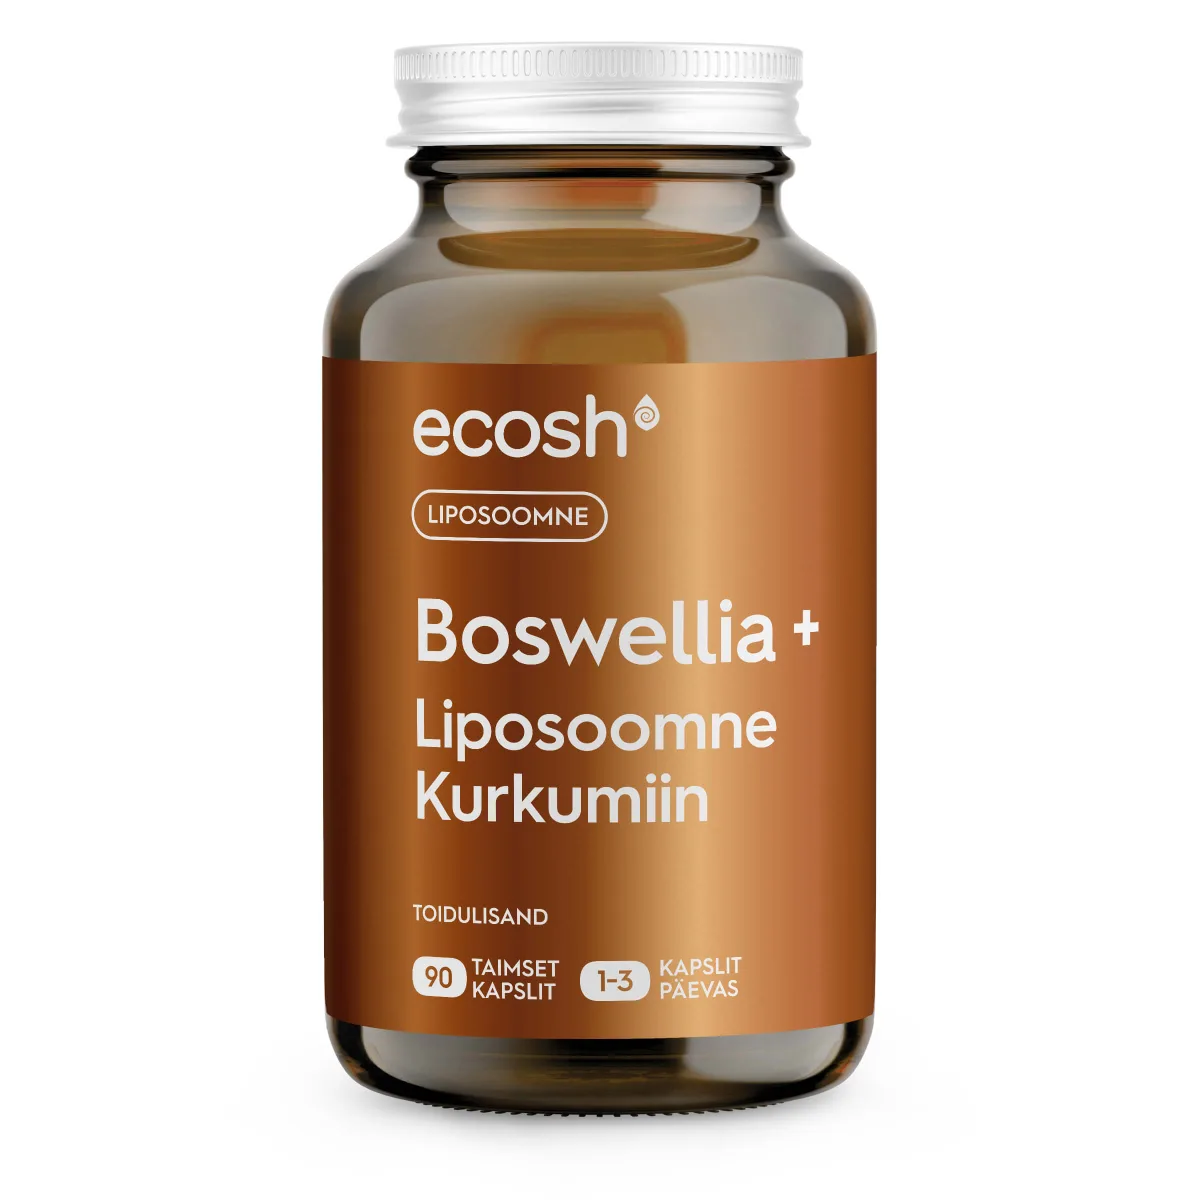 Ecosh-Boswellia-liposoomne-kurkumiin